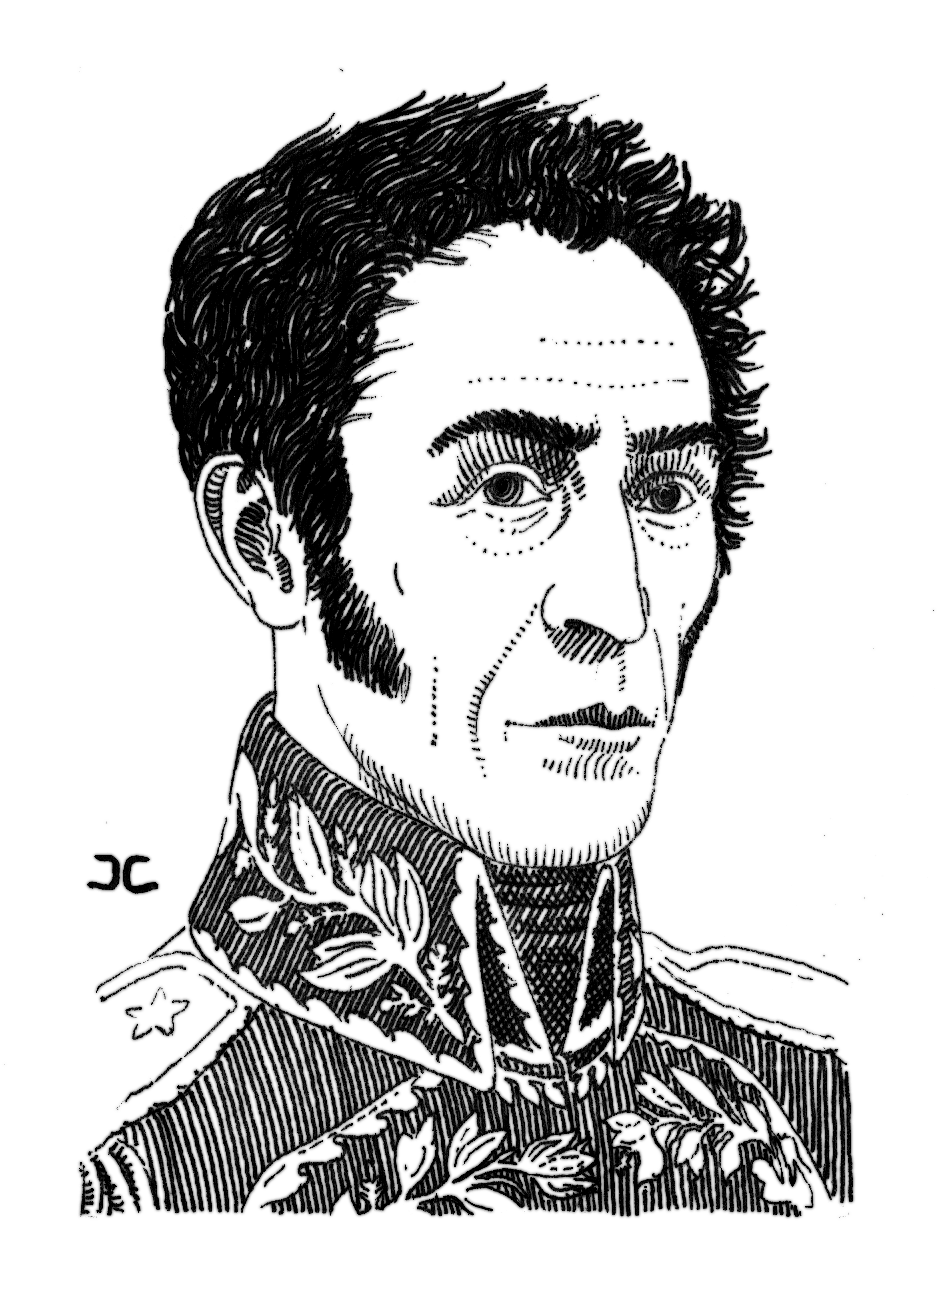 Tinteriando: El verdadero rostro de Simón Bolívar